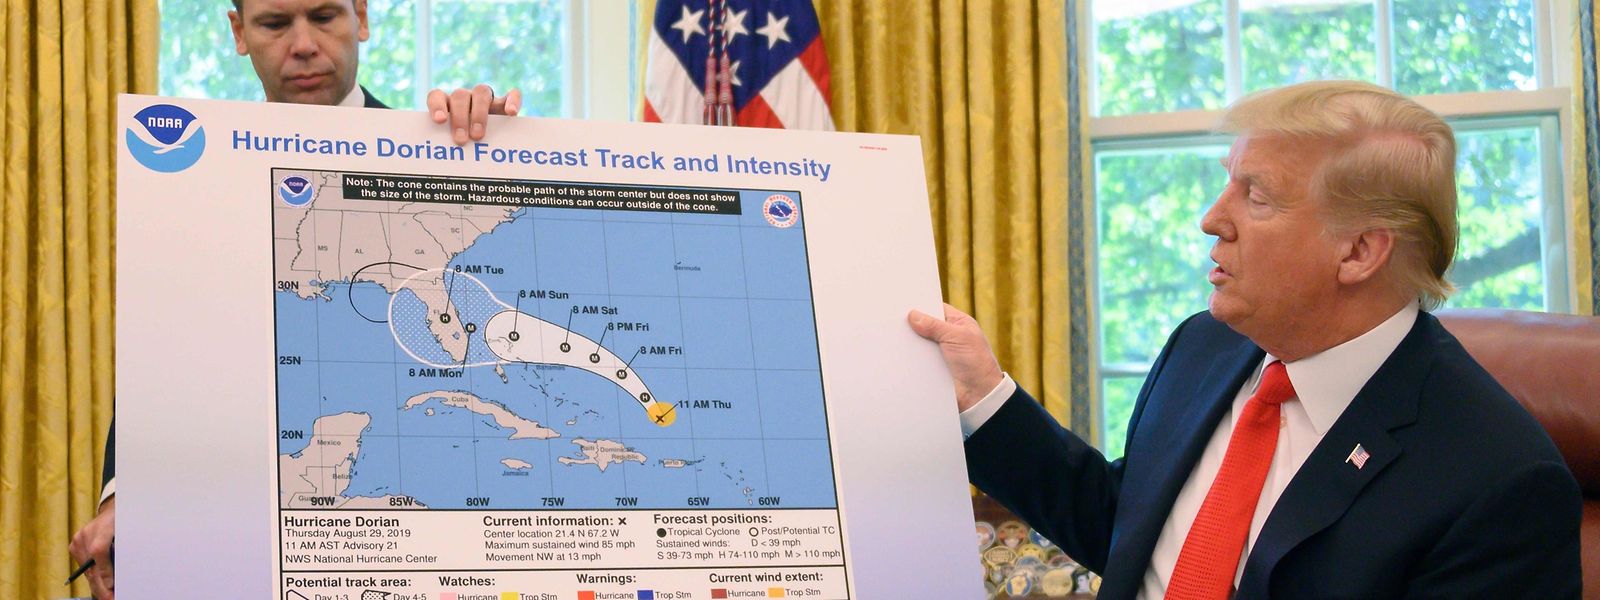 US-Präsident Donald Trump erklärt die aktuelle Hurrikan-Situation.